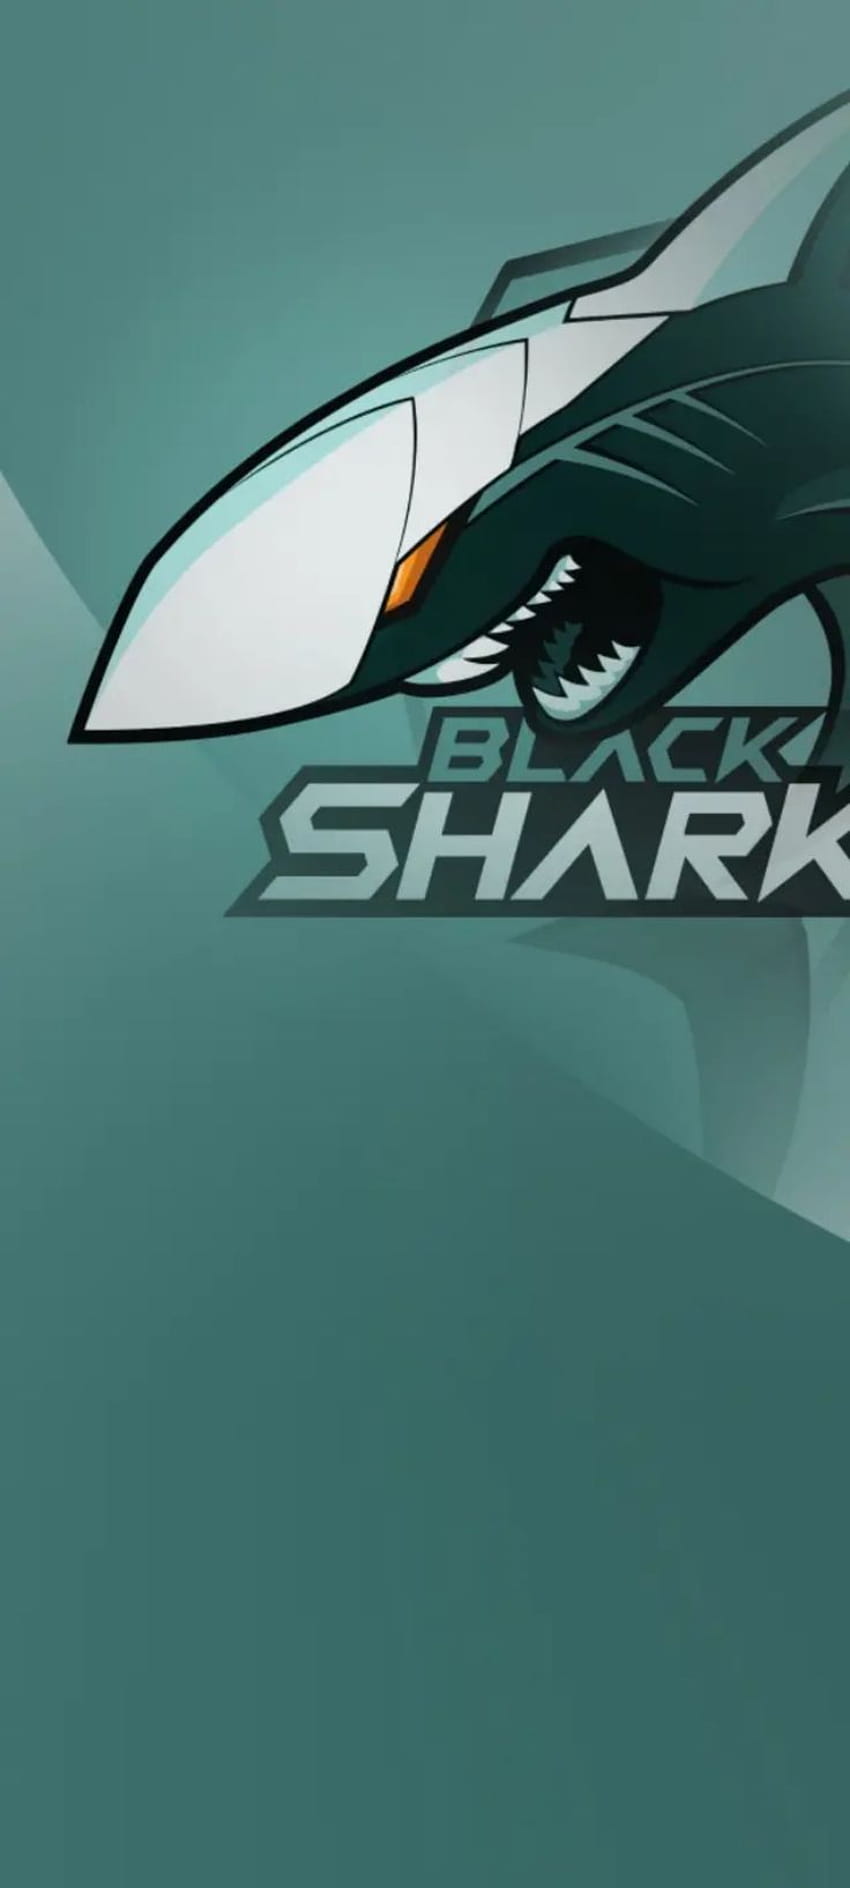 Logo Shark đặc trưng của Black Shark chắc chắn sẽ khiến cho điện thoại của bạn trở nên phong cách hơn bao giờ hết. Với các mẫu wallpaper logo Shark đẹp mắt, bạn có thể dễ dàng chọn lựa cho mình một phong cách mới lạ và sáng tạo.